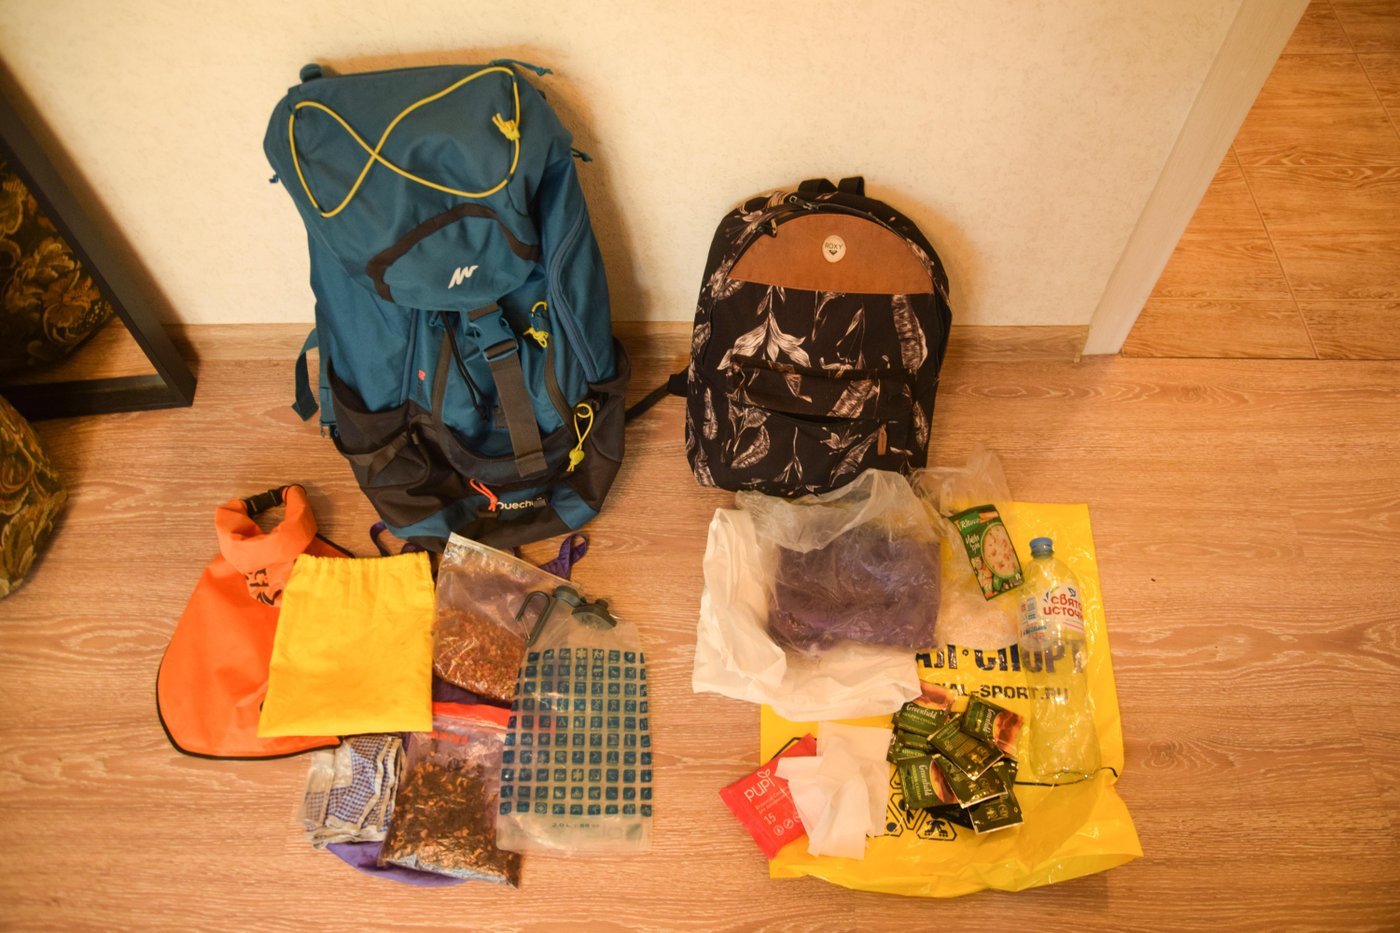 Слева - рюкзак, собранный по методу Zero Waste, справа - по обычному принципу